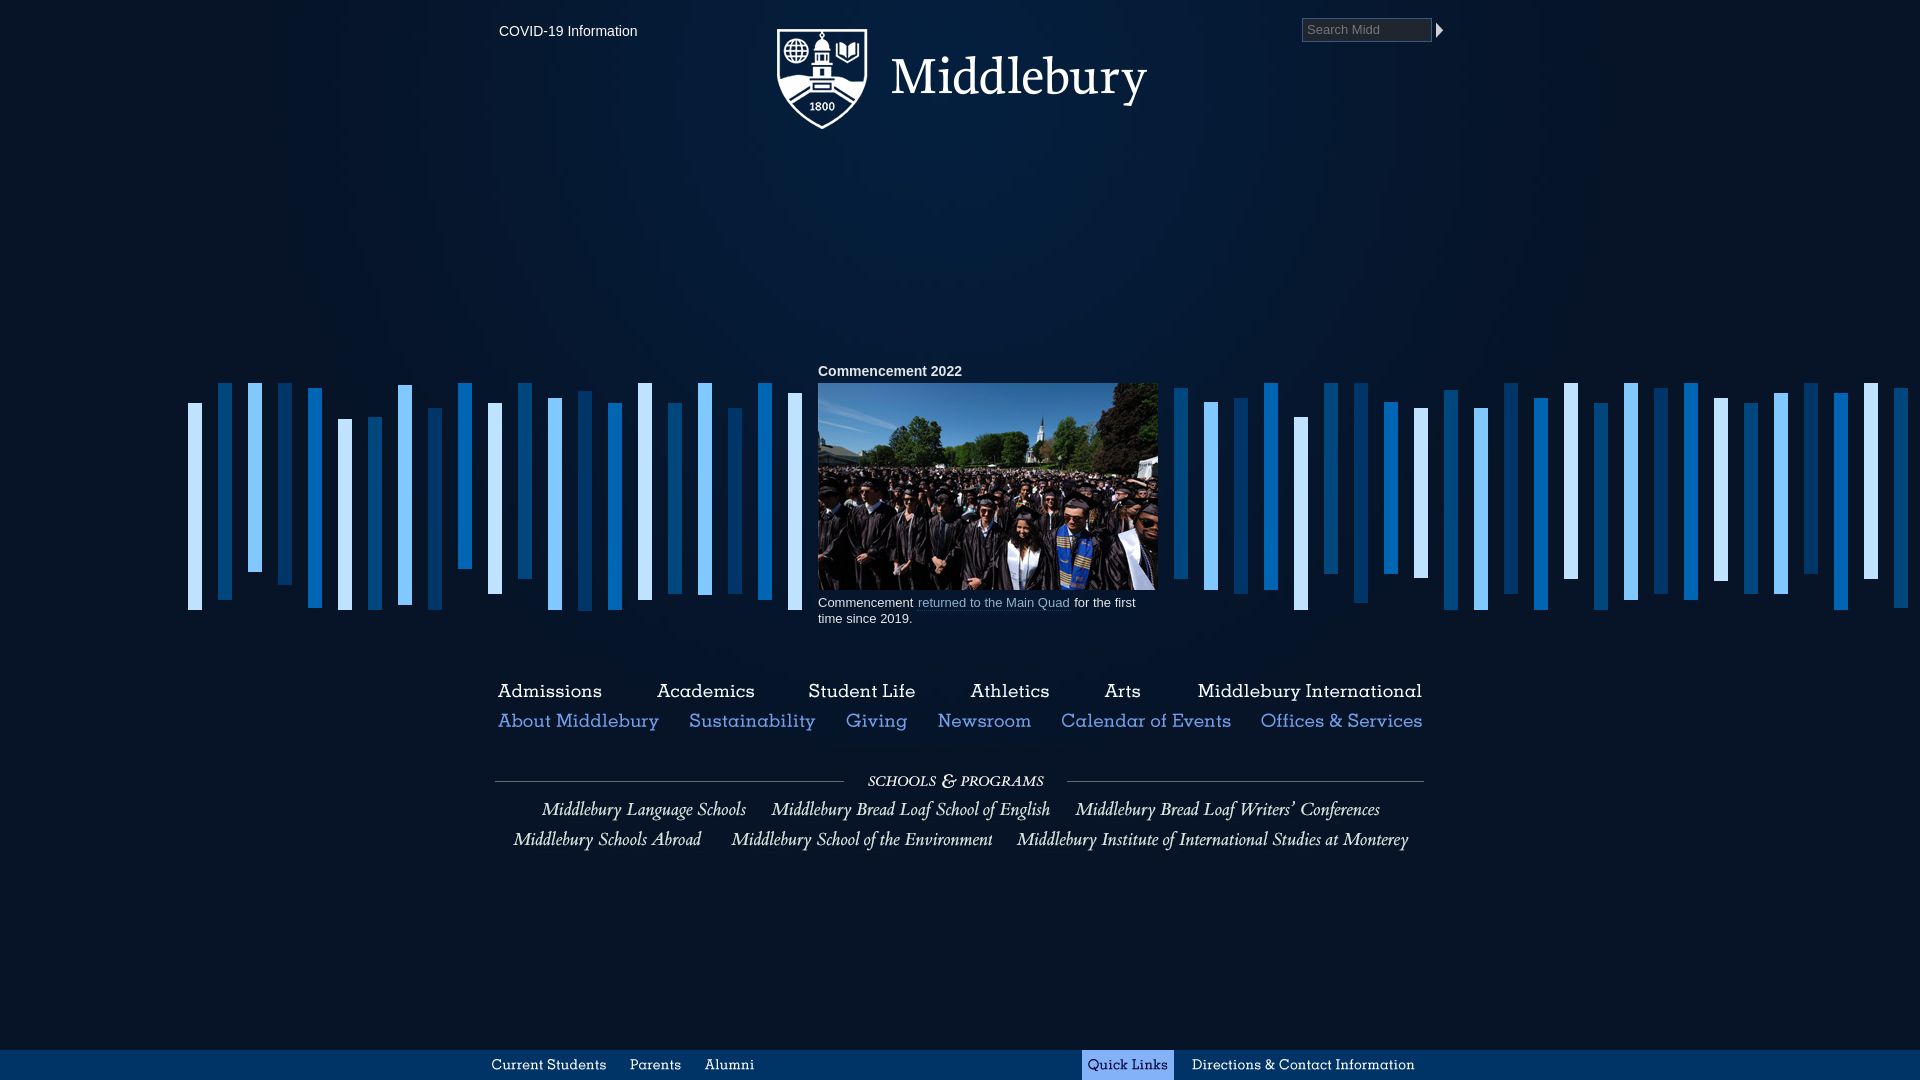 Estado web middlebury.edu está   ONLINE